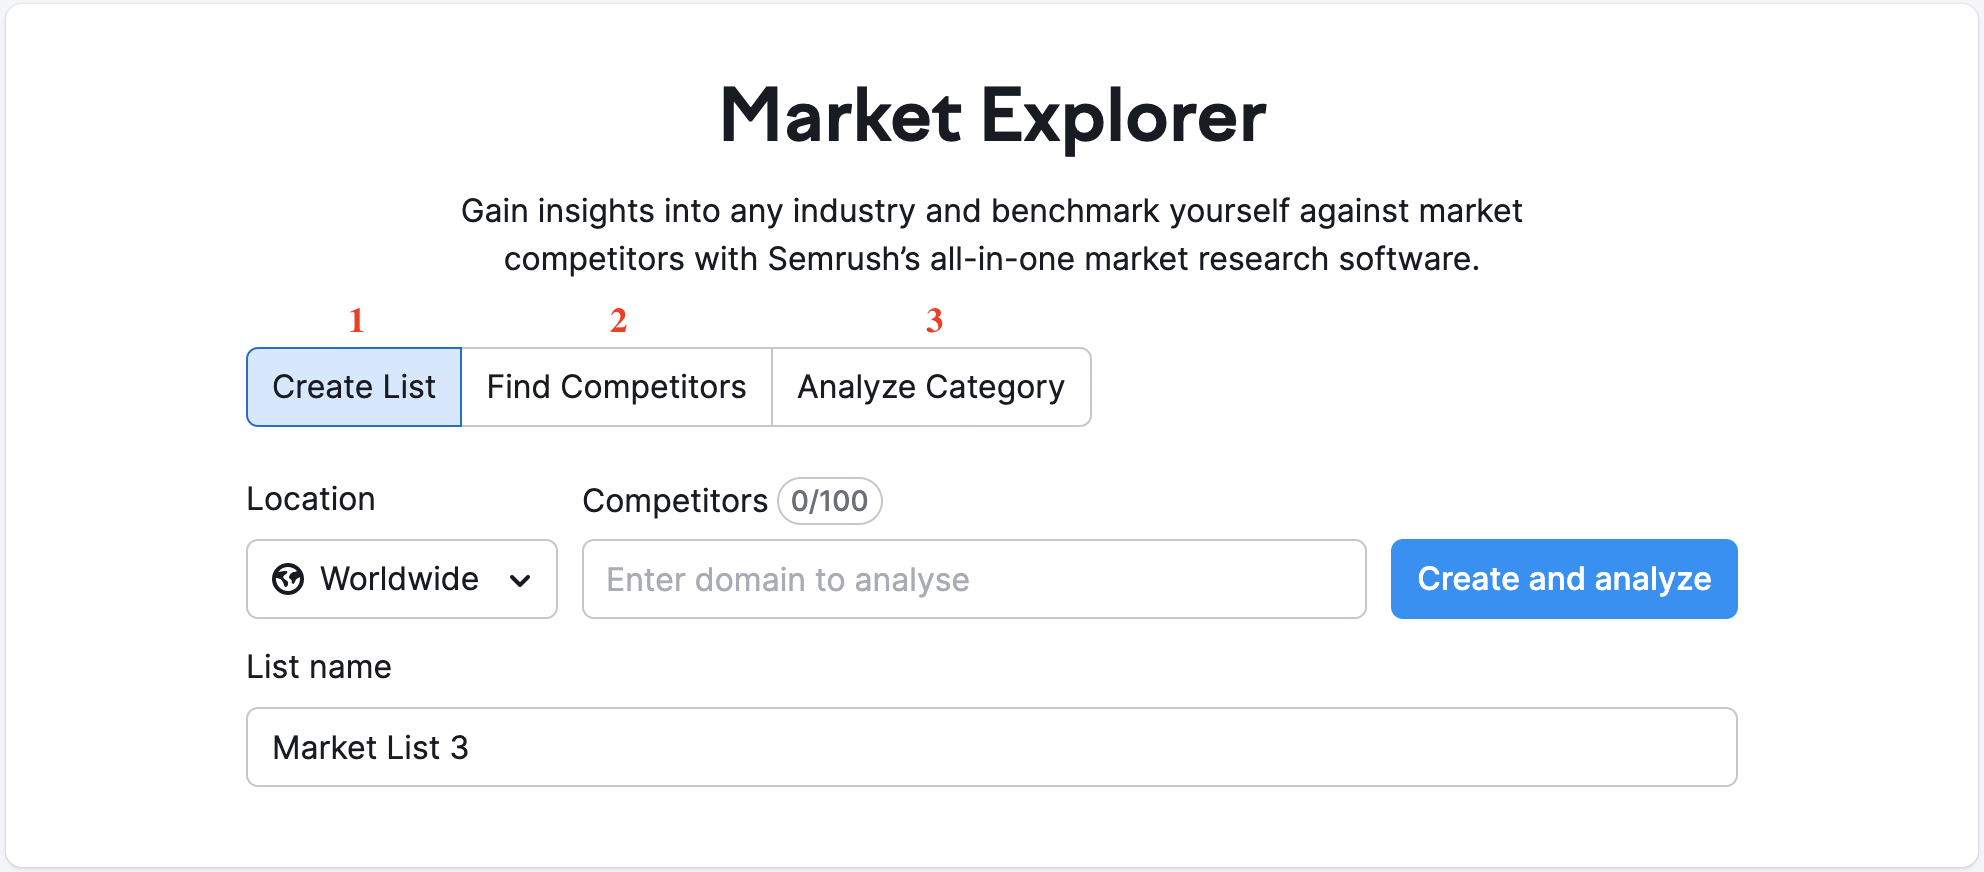 Landing page di Market Explorer con tre opzioni disponibili ed evidenziate da un rettangolo rosso: 1 - Crea elenco, 2 - Trova competitor e 3 - Analizza categoria.